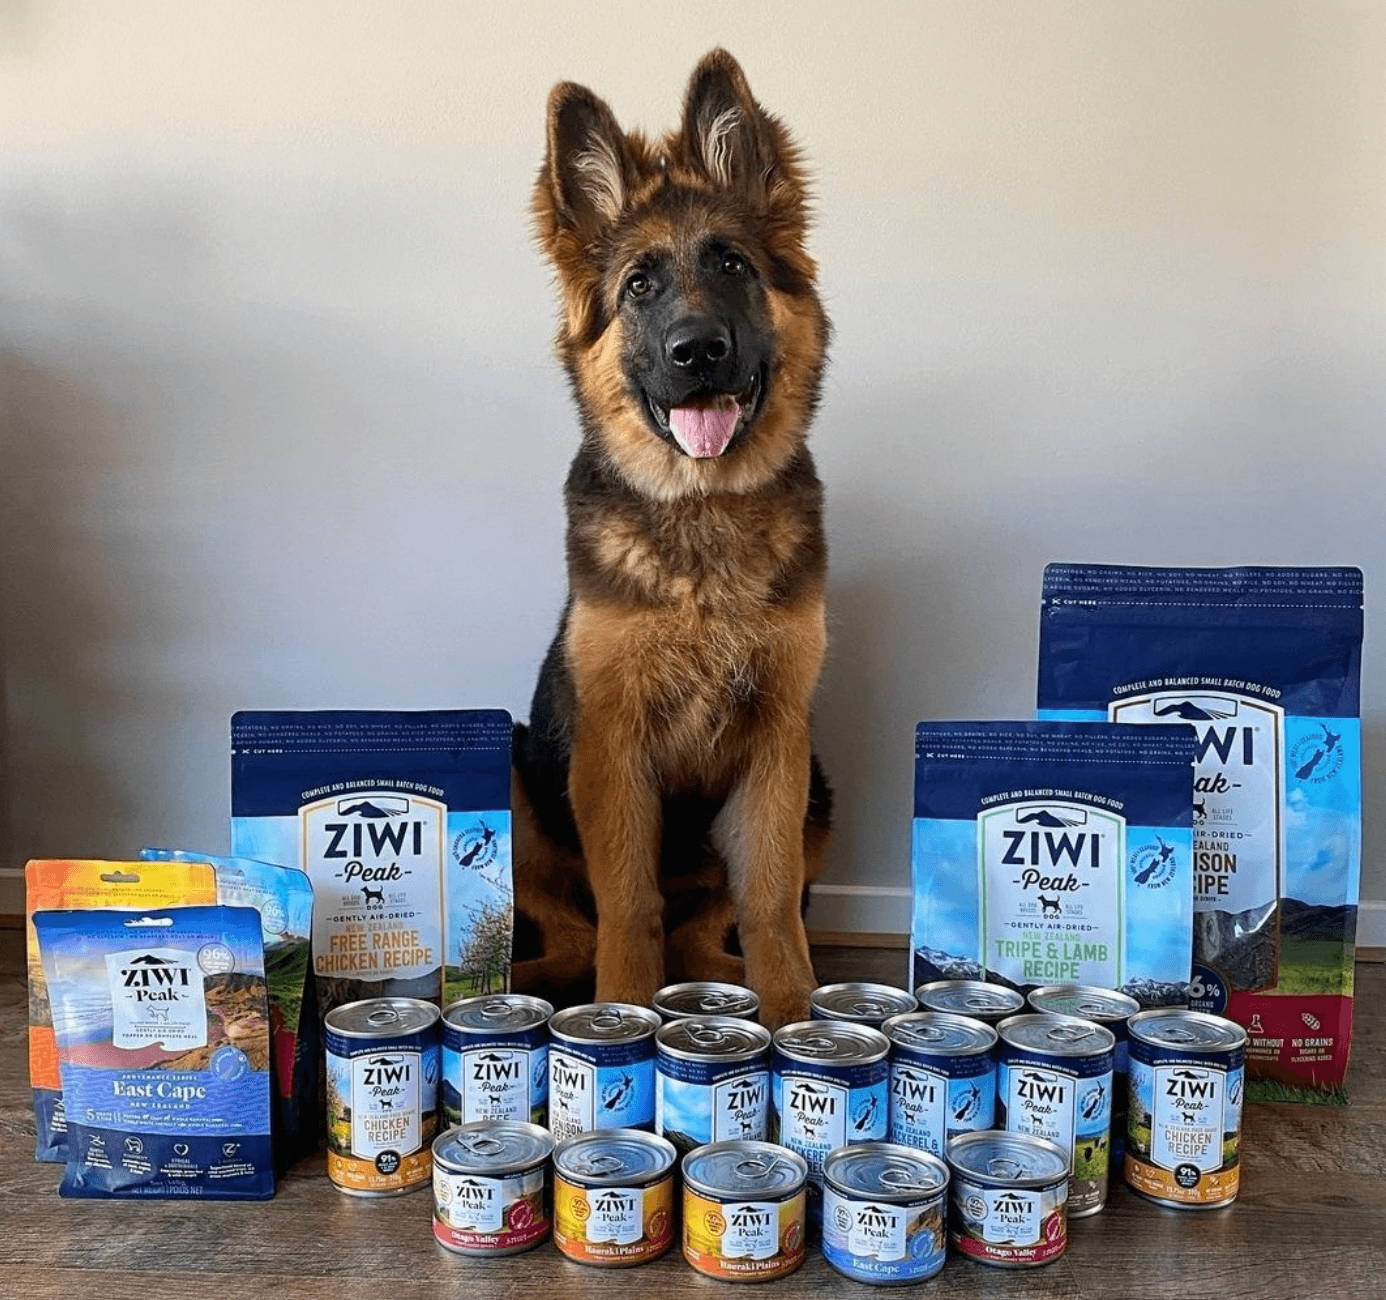 Ziwi Peak Dog Food Range with German Shepherd